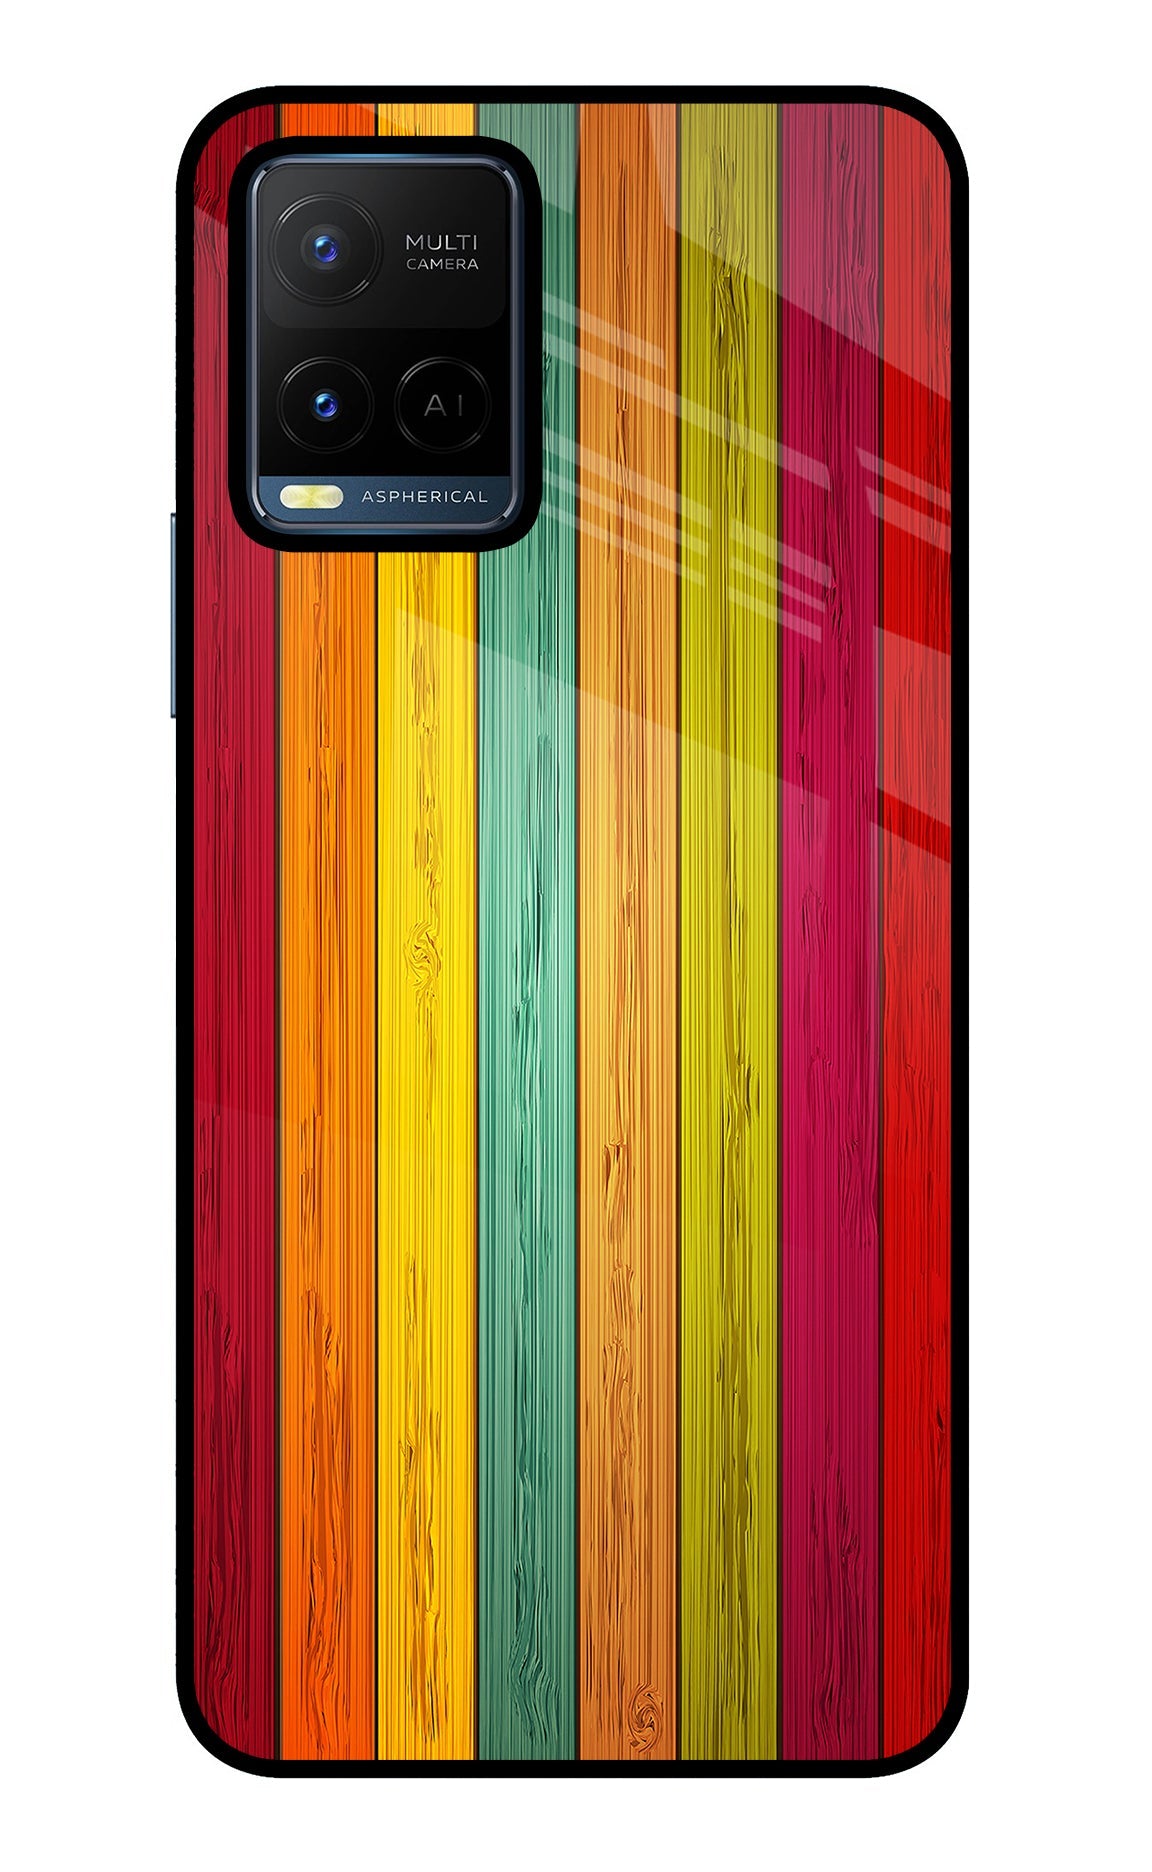 Multicolor Wooden Vivo Y21/Y21s/Y33s Glass Case